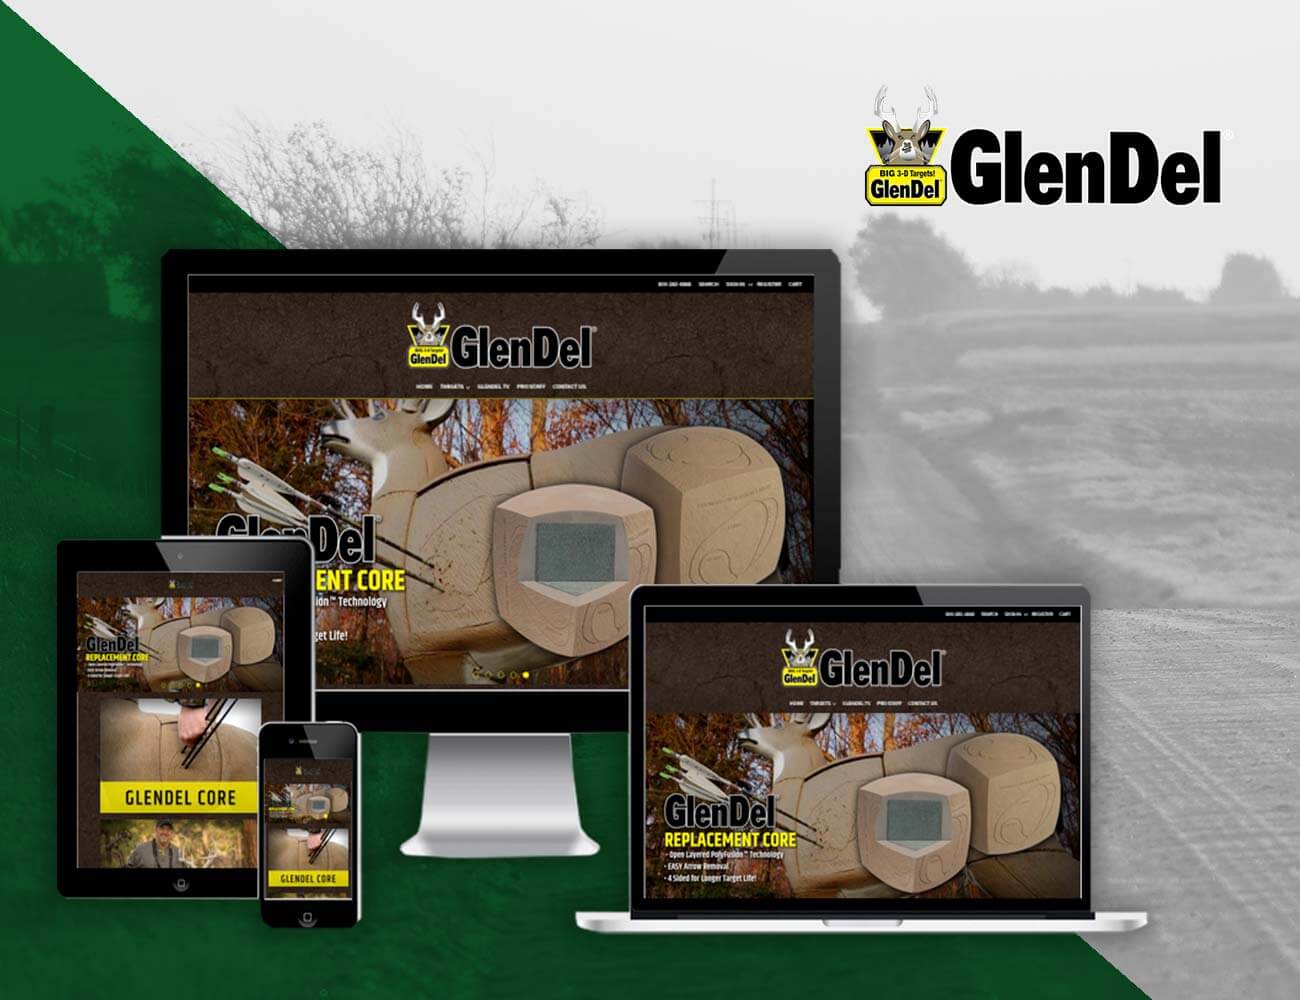 glendel targets website design